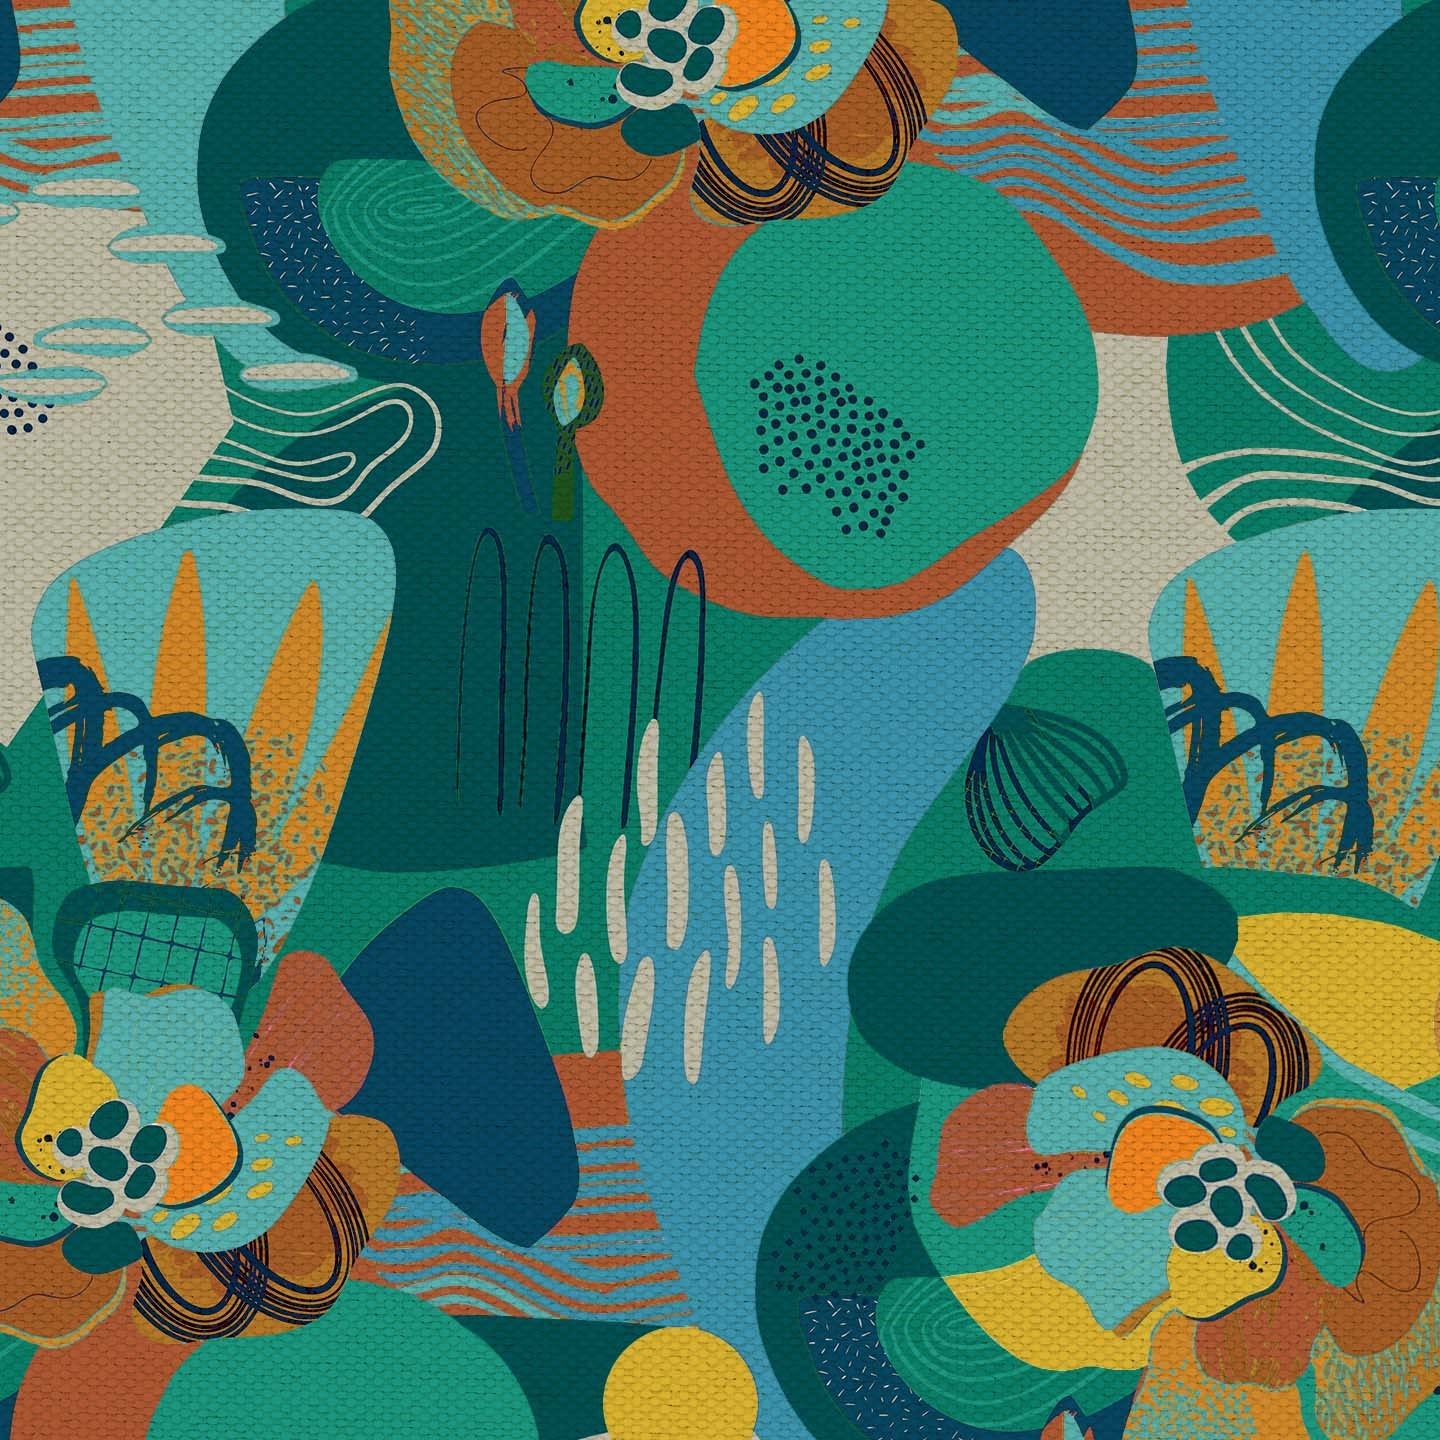 Joy collezione cuscini a fantasie multicolor in tessuto fresco cotone impermeabile